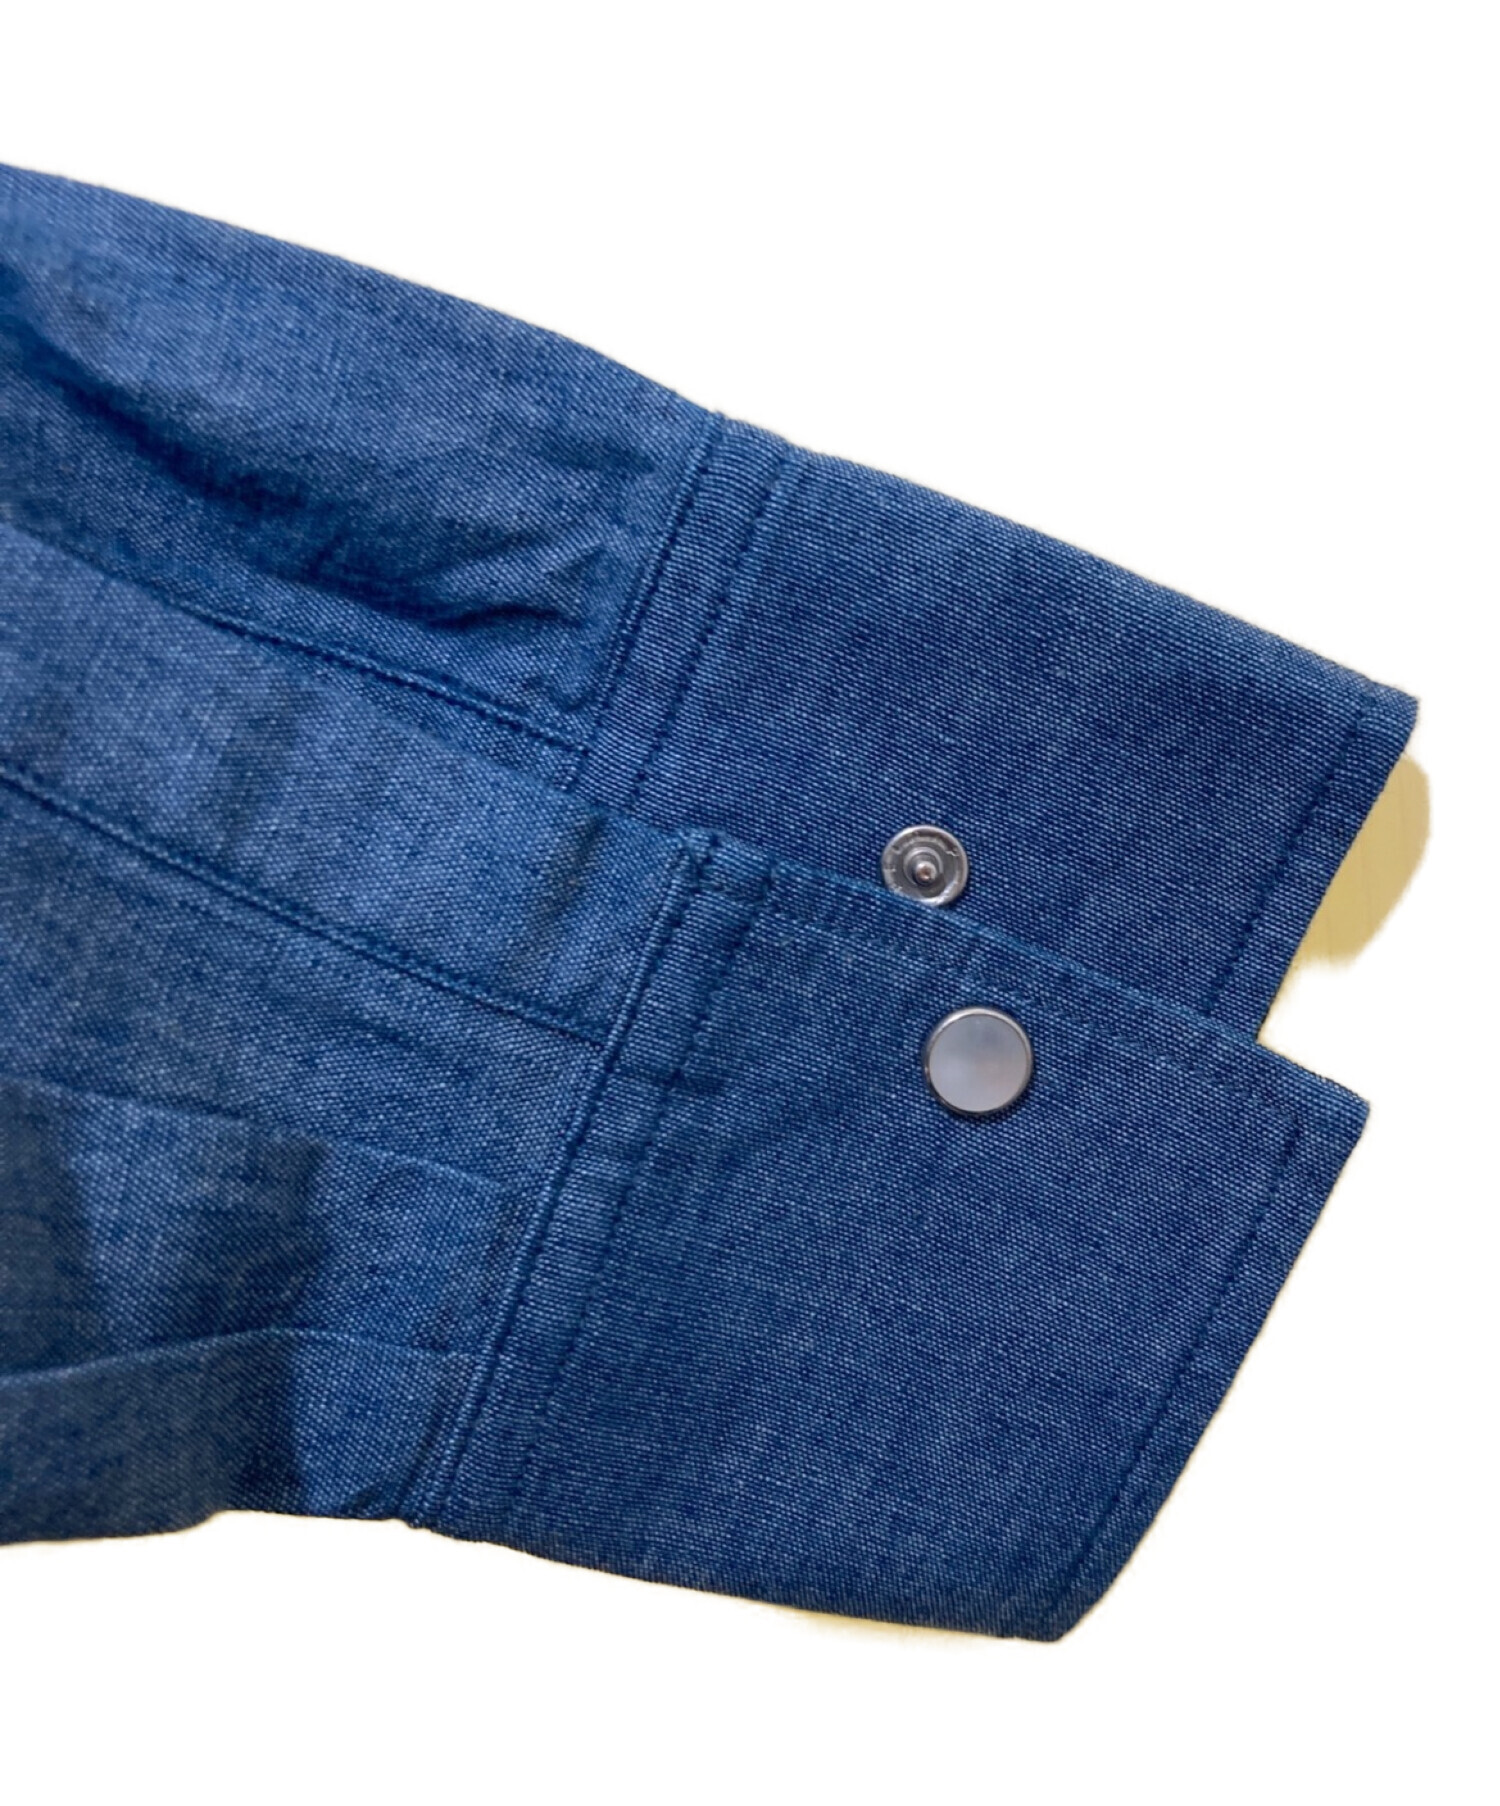 Spick and Span (スピックアンドスパン) コットンシャンブレーシャツ ブルー サイズ:FREE 未使用品